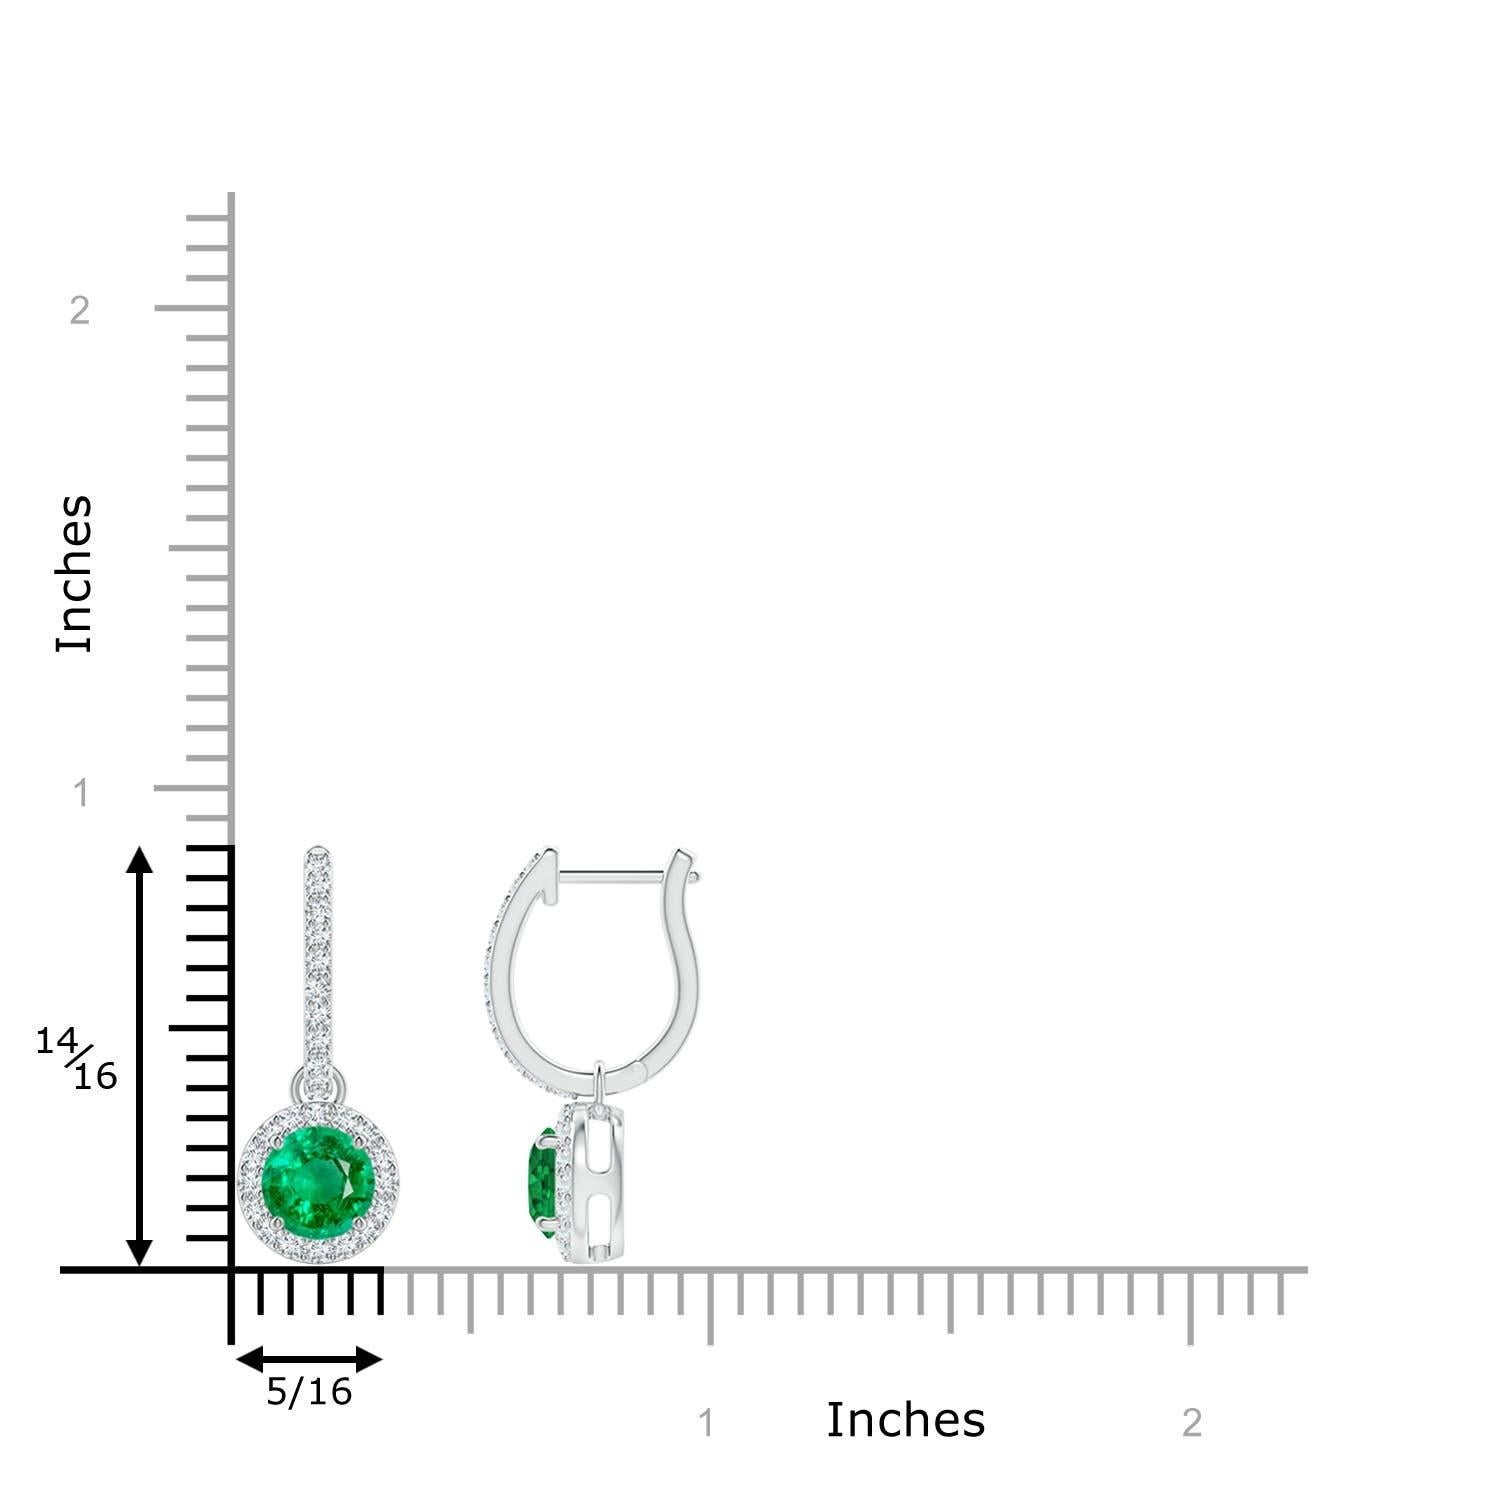 Eingebettet in einen schimmernden Halo aus runden Diamanten sind runde, sattgrüne Smaragde in Zackenfassung. Die diamantenen Akzente auf dem Ring verleihen diesen Smaragd-Ohrringen aus 14-karätigem Weißgold einen zusätzlichen Hauch von Eleganz.
Der